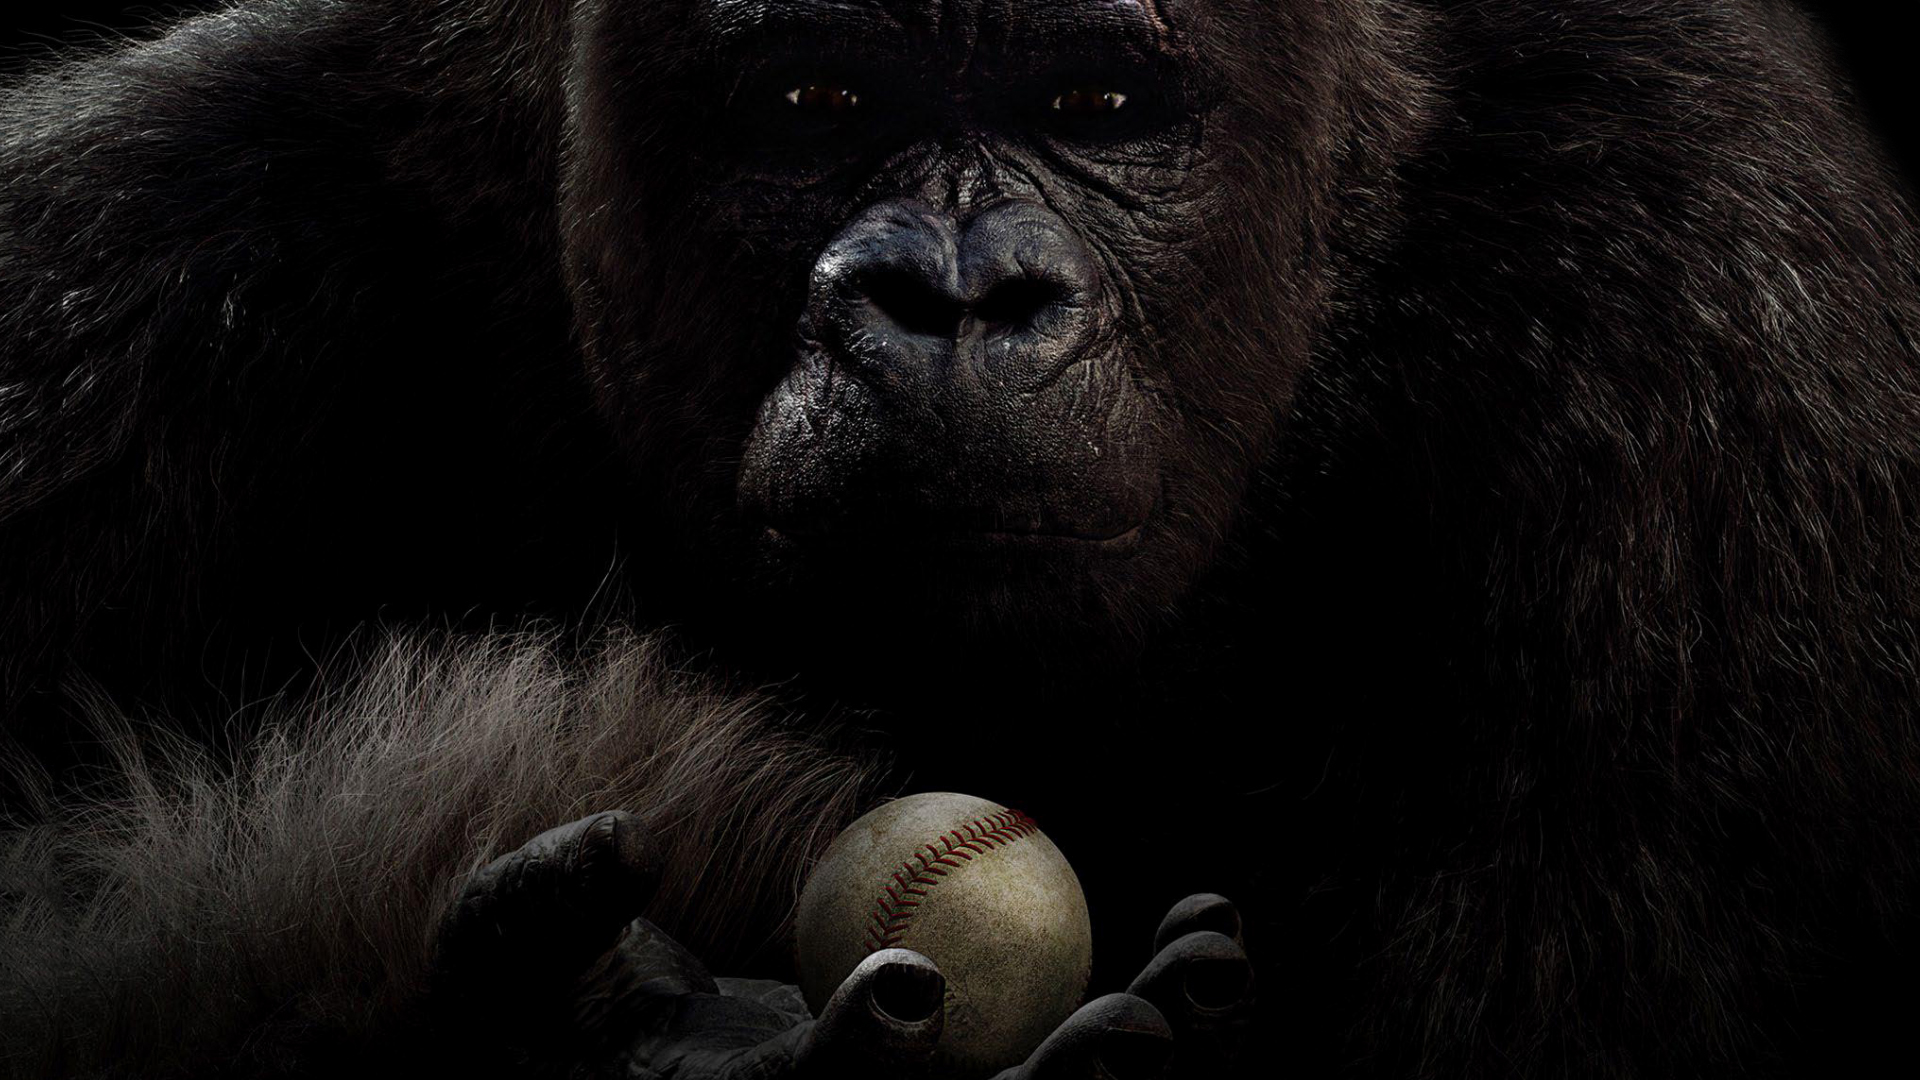 Download mobile wallpaper Gorilla, Movie, Mr Go for free.